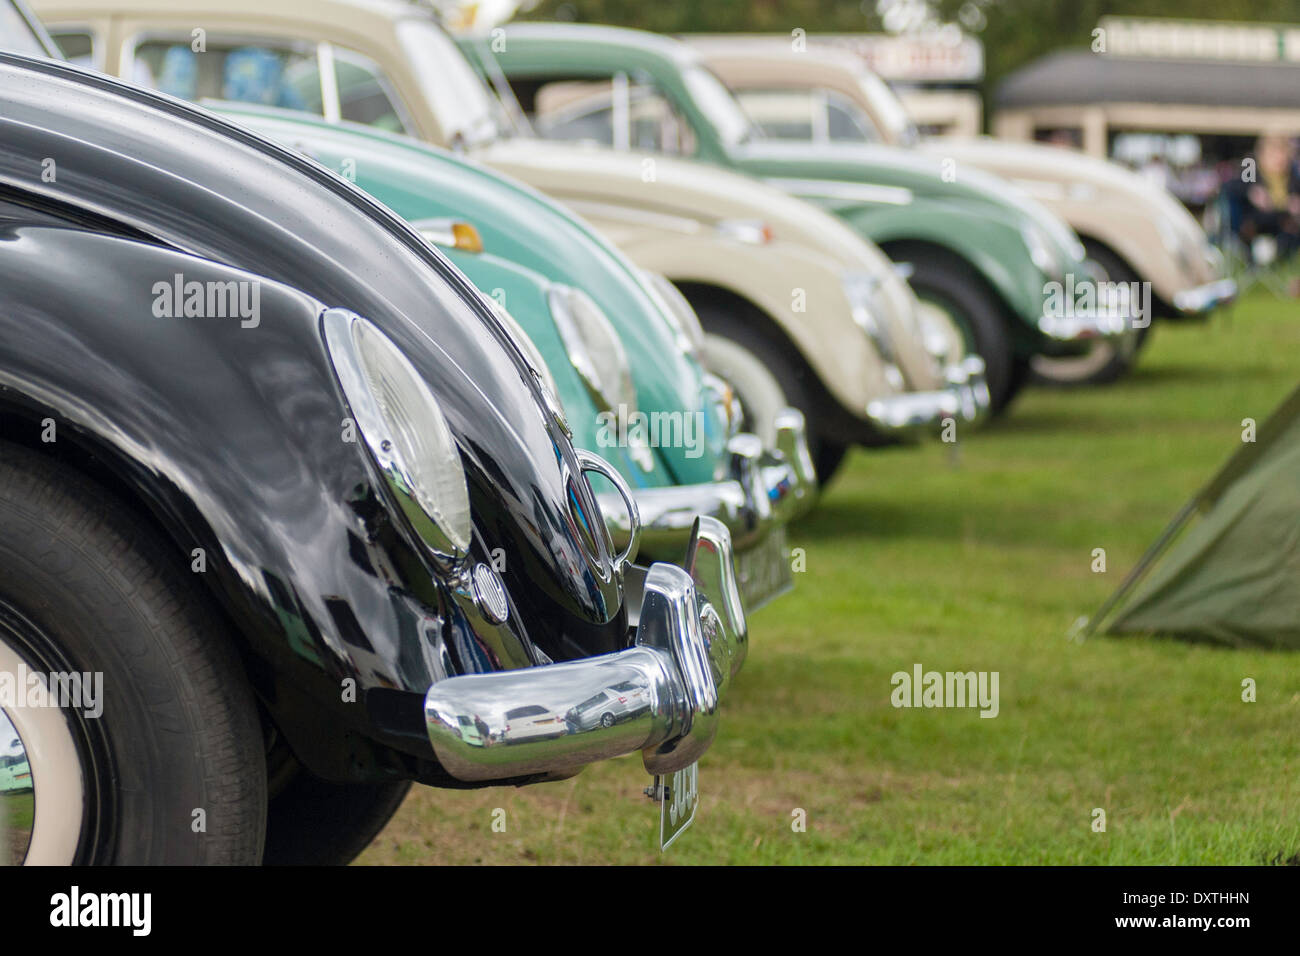 Volkswagen Beetle front view. Stock Photo